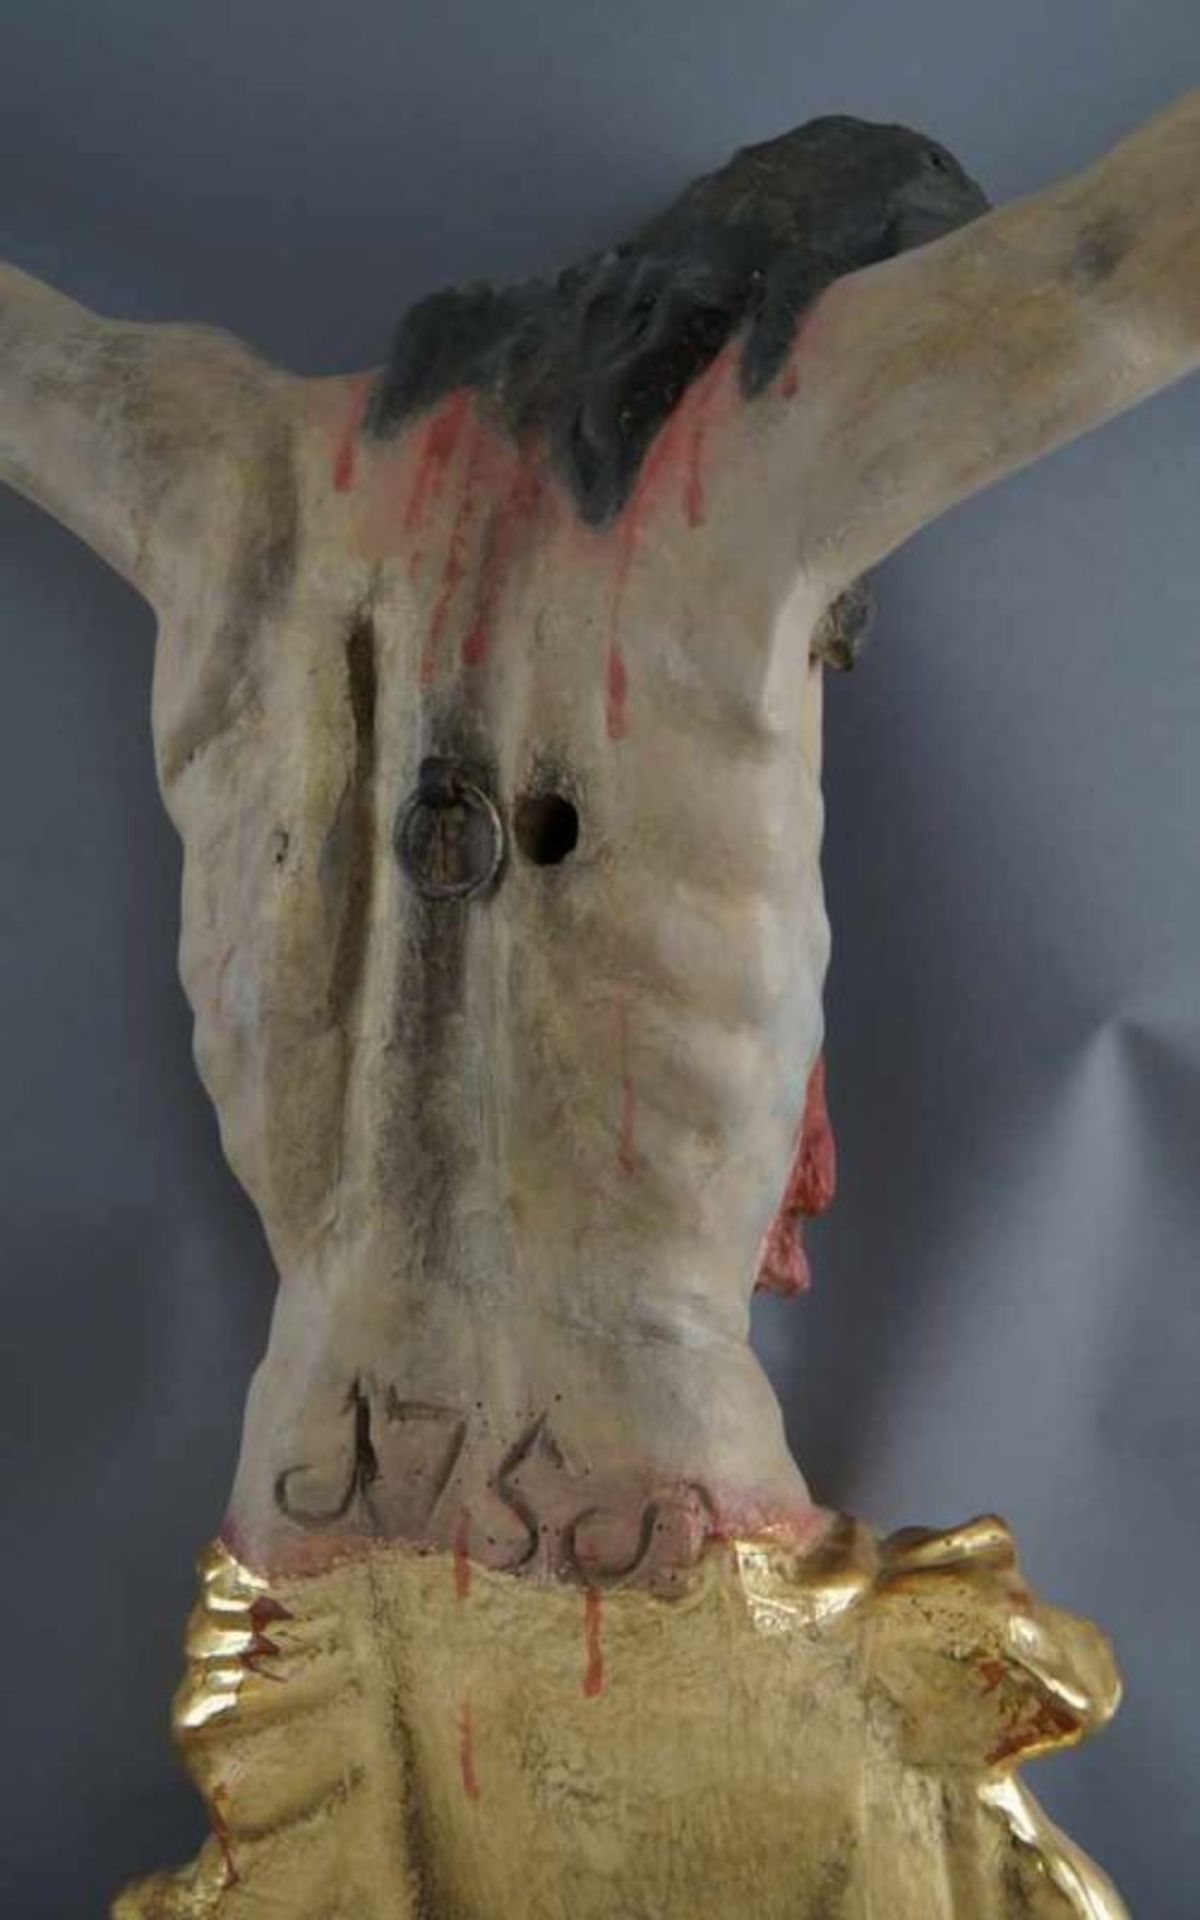 Barocker Korpus Christi, Holz geschnitzt und gefasst, 18. JH, rest., 92x79cm 20.17 % buyer's premium - Bild 10 aus 11